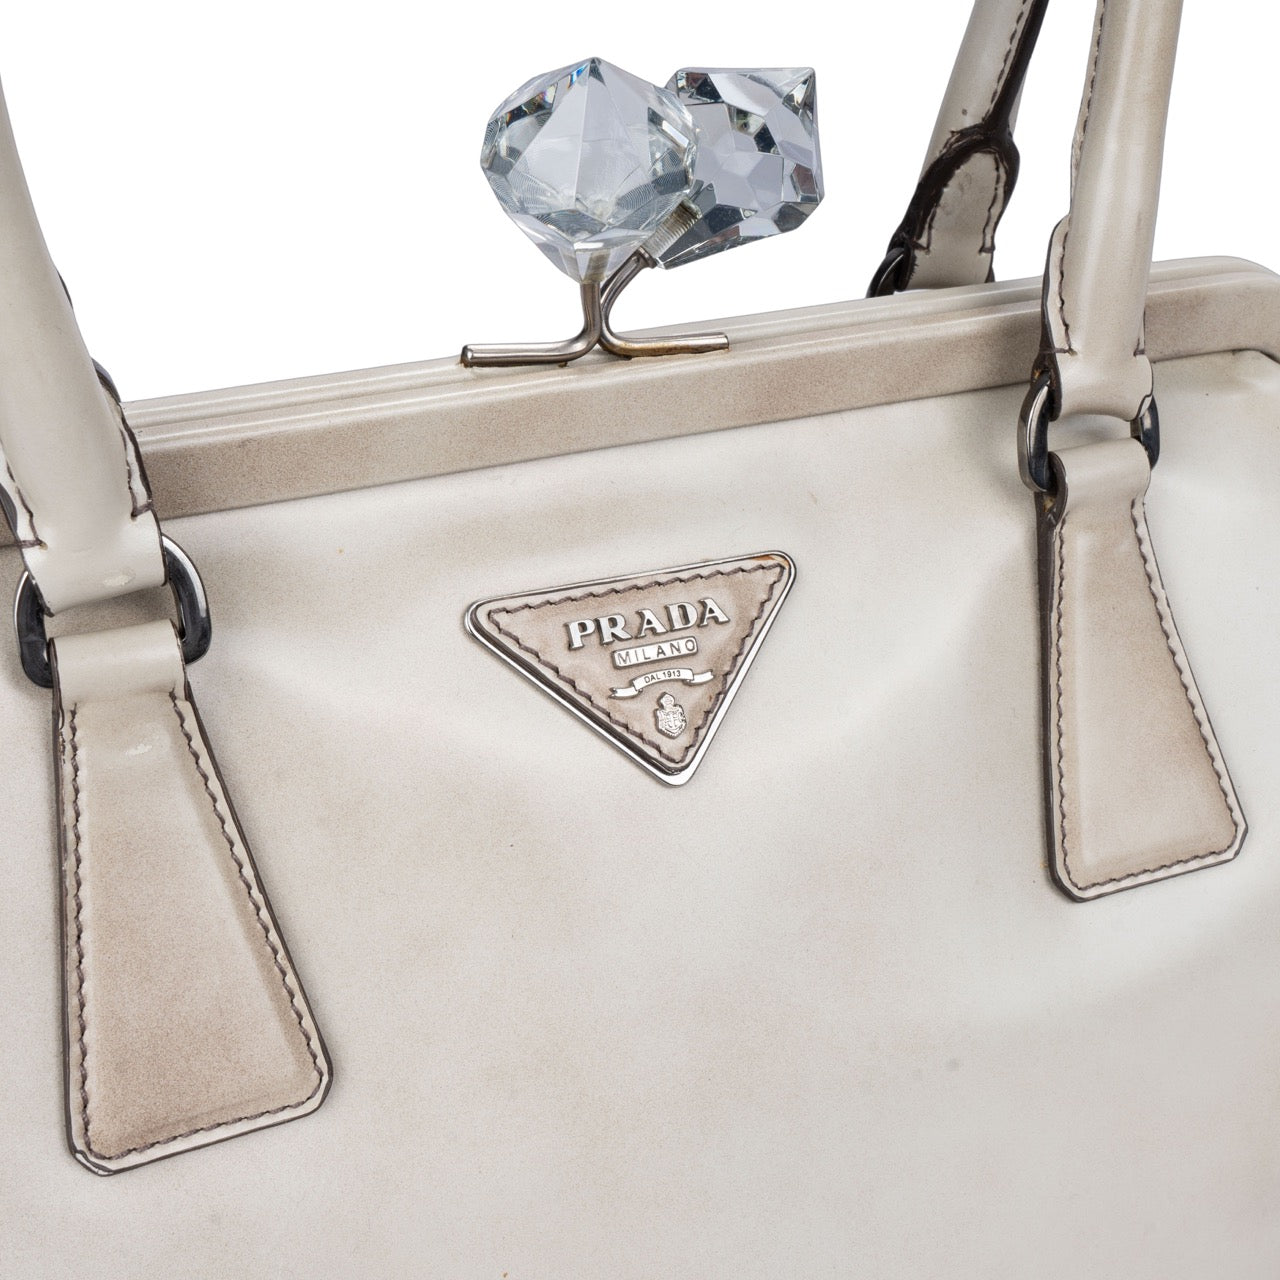 Prada Patent Leather Diamond Handbag